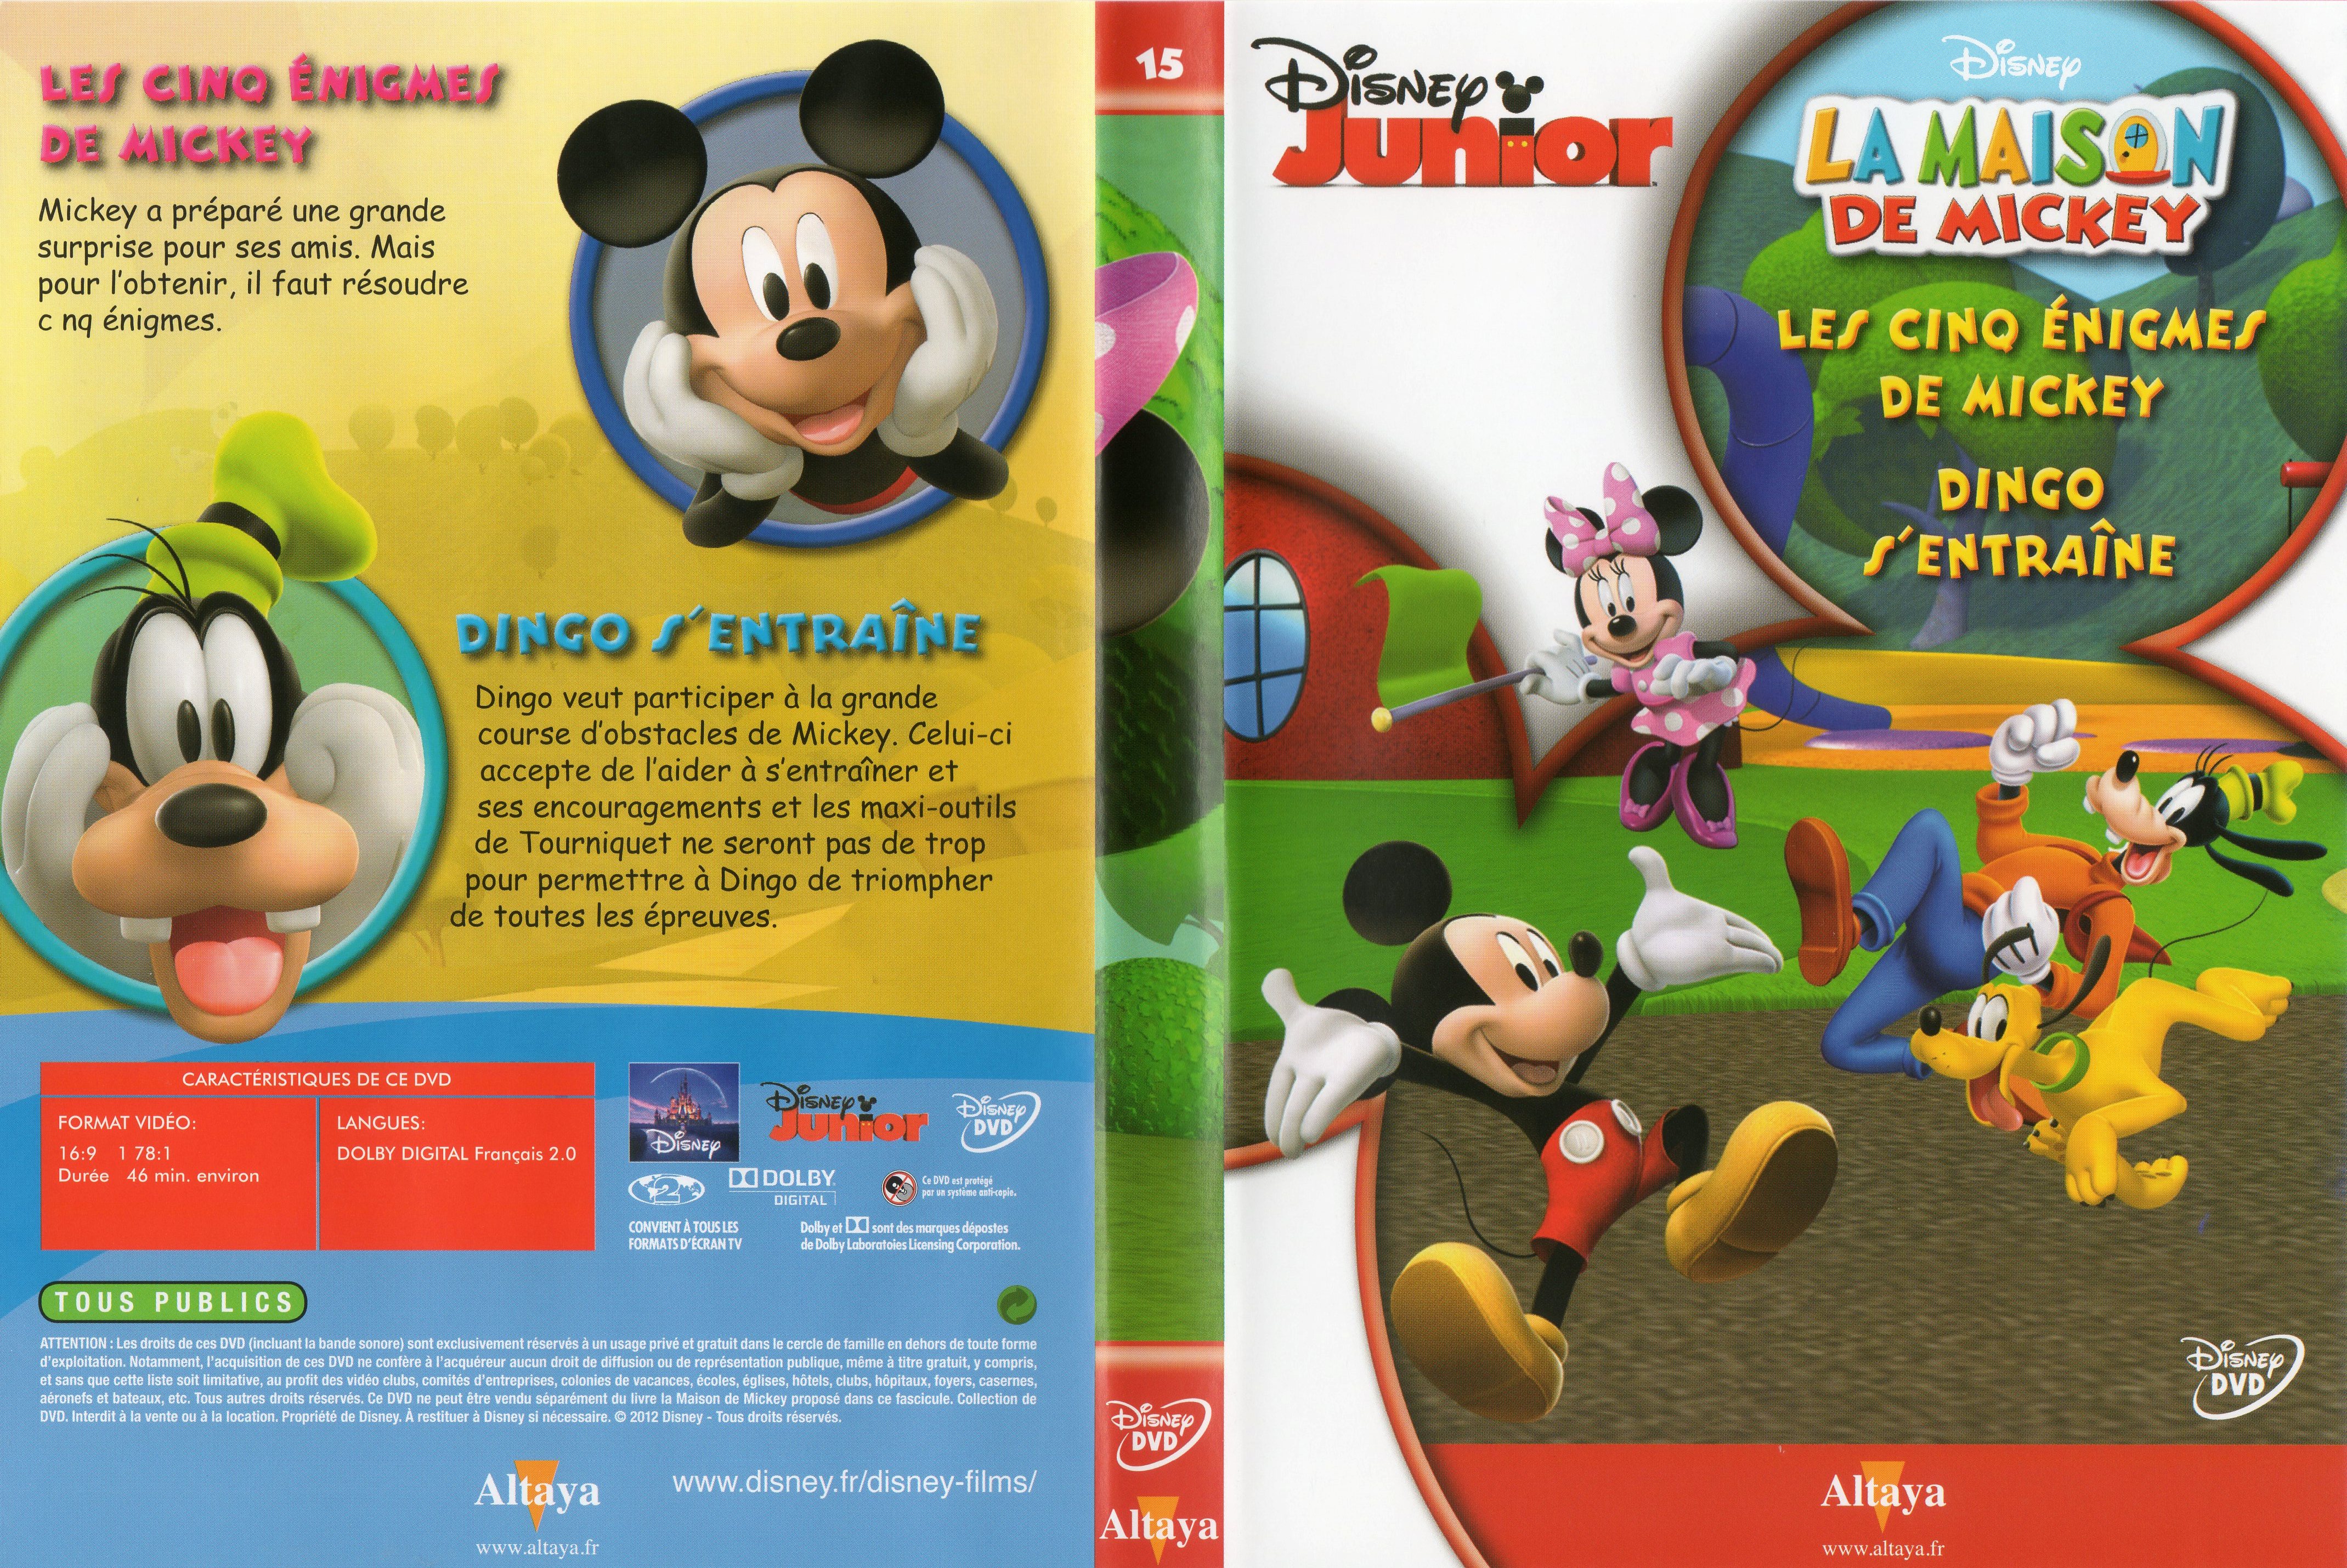 Jaquette DVD La maison de Mickey DVD 15